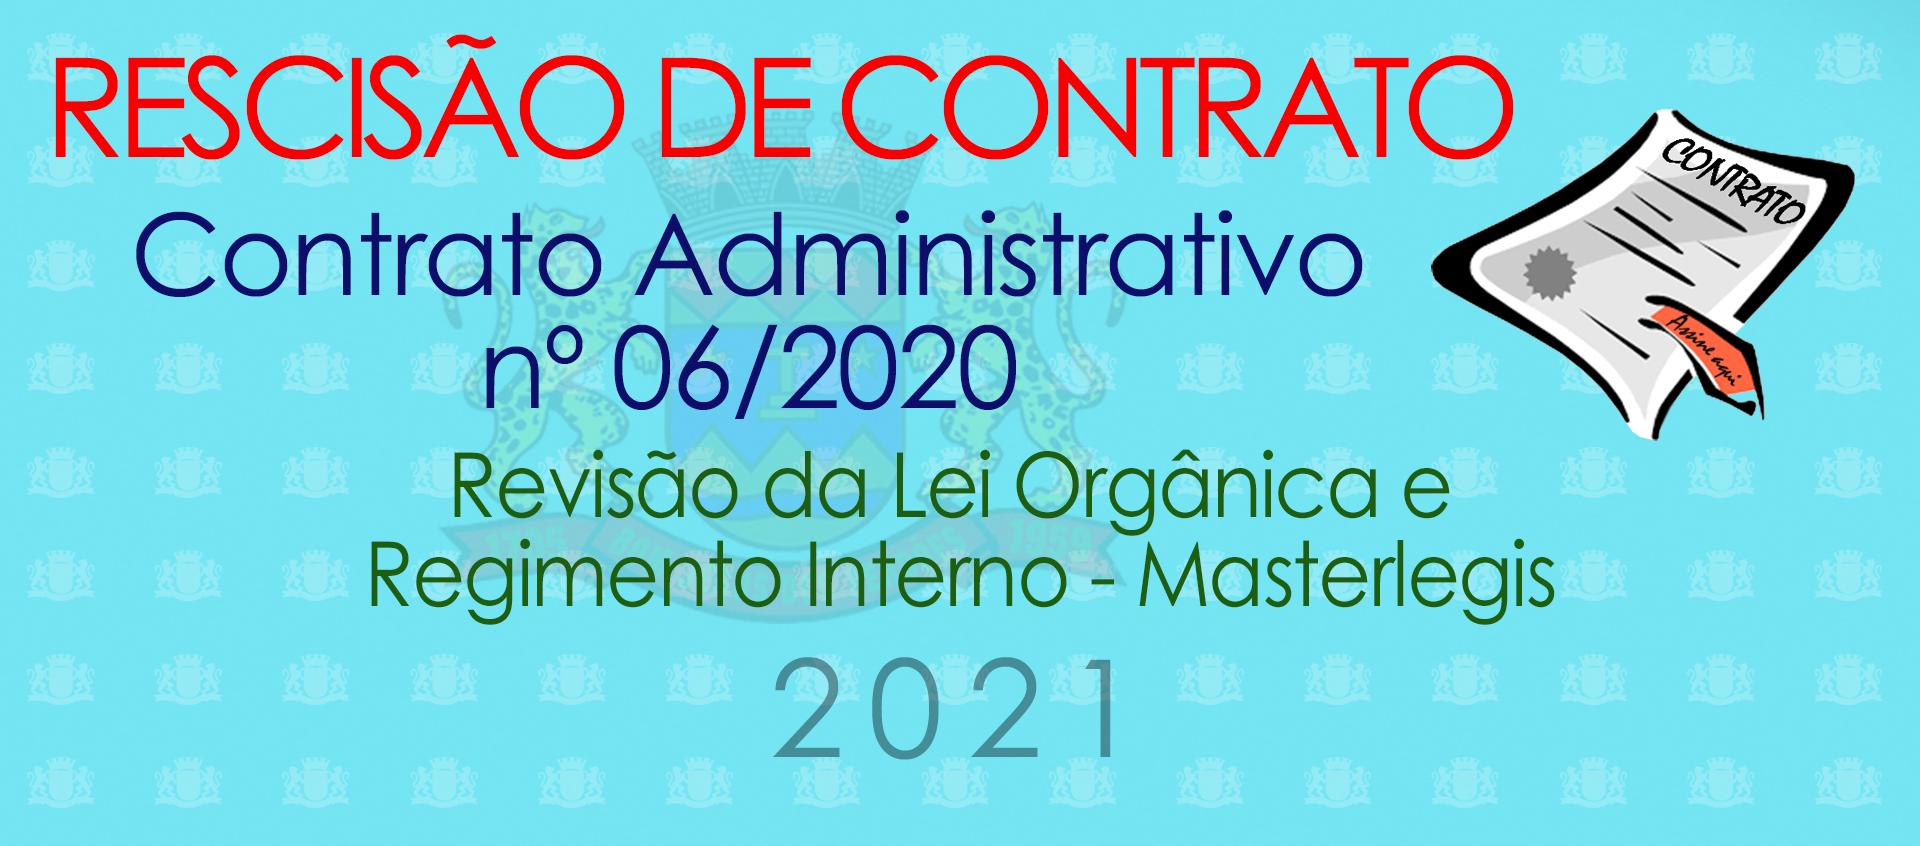 Rescisão do Contrato Administrativo 06-2020